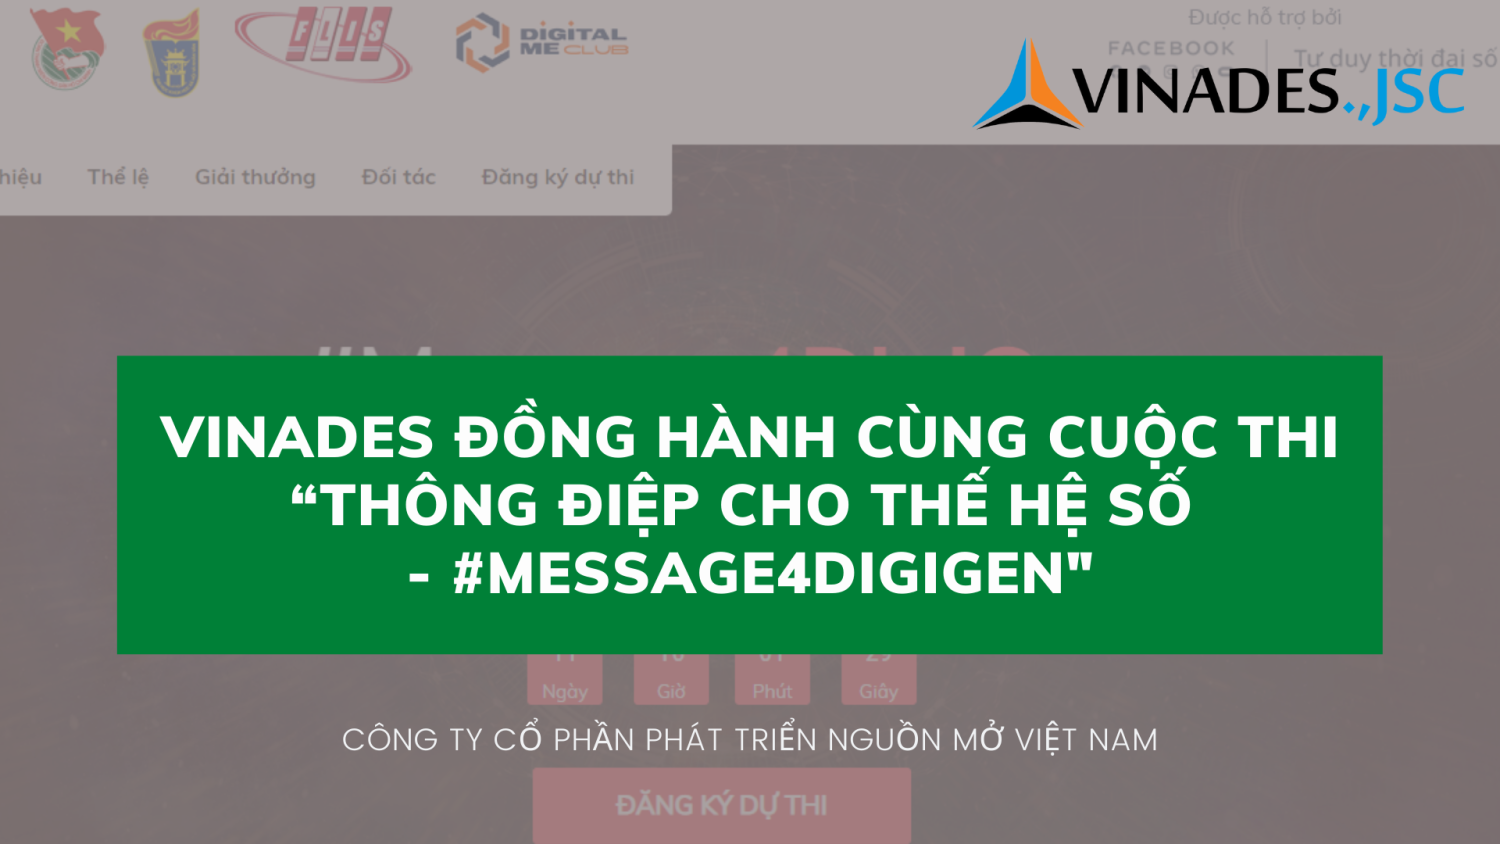 VINADES đồng hành cùng cuộc thi “Thông điệp cho thế hệ số - #Message4DigiGen" được tổ chức bởi Đại học Quốc gia Hà Nội